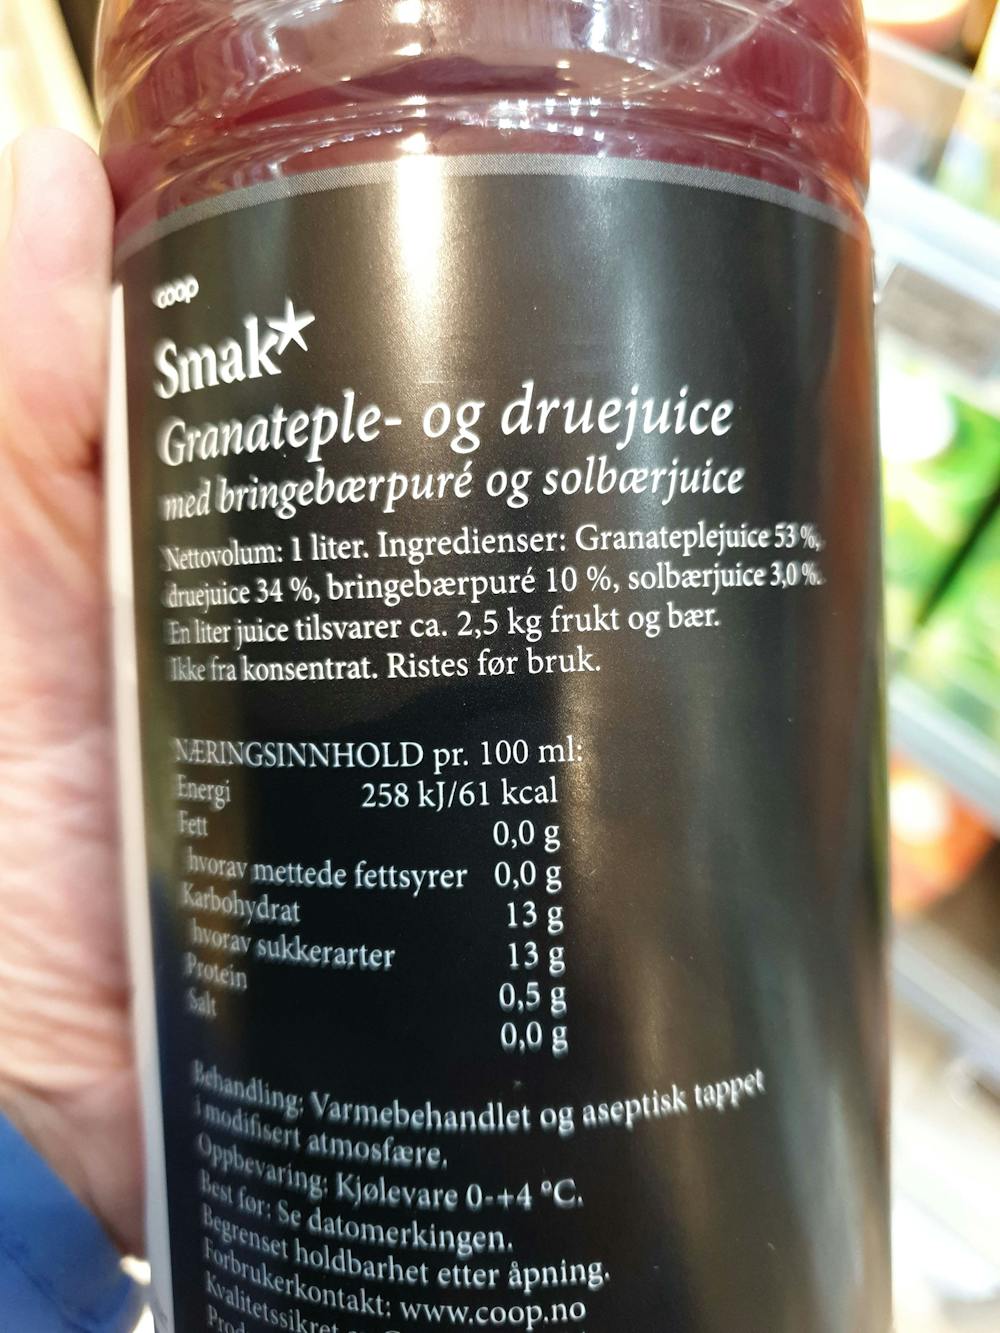 Ingredienslisten til Coop Smak* granateple- og druejuice